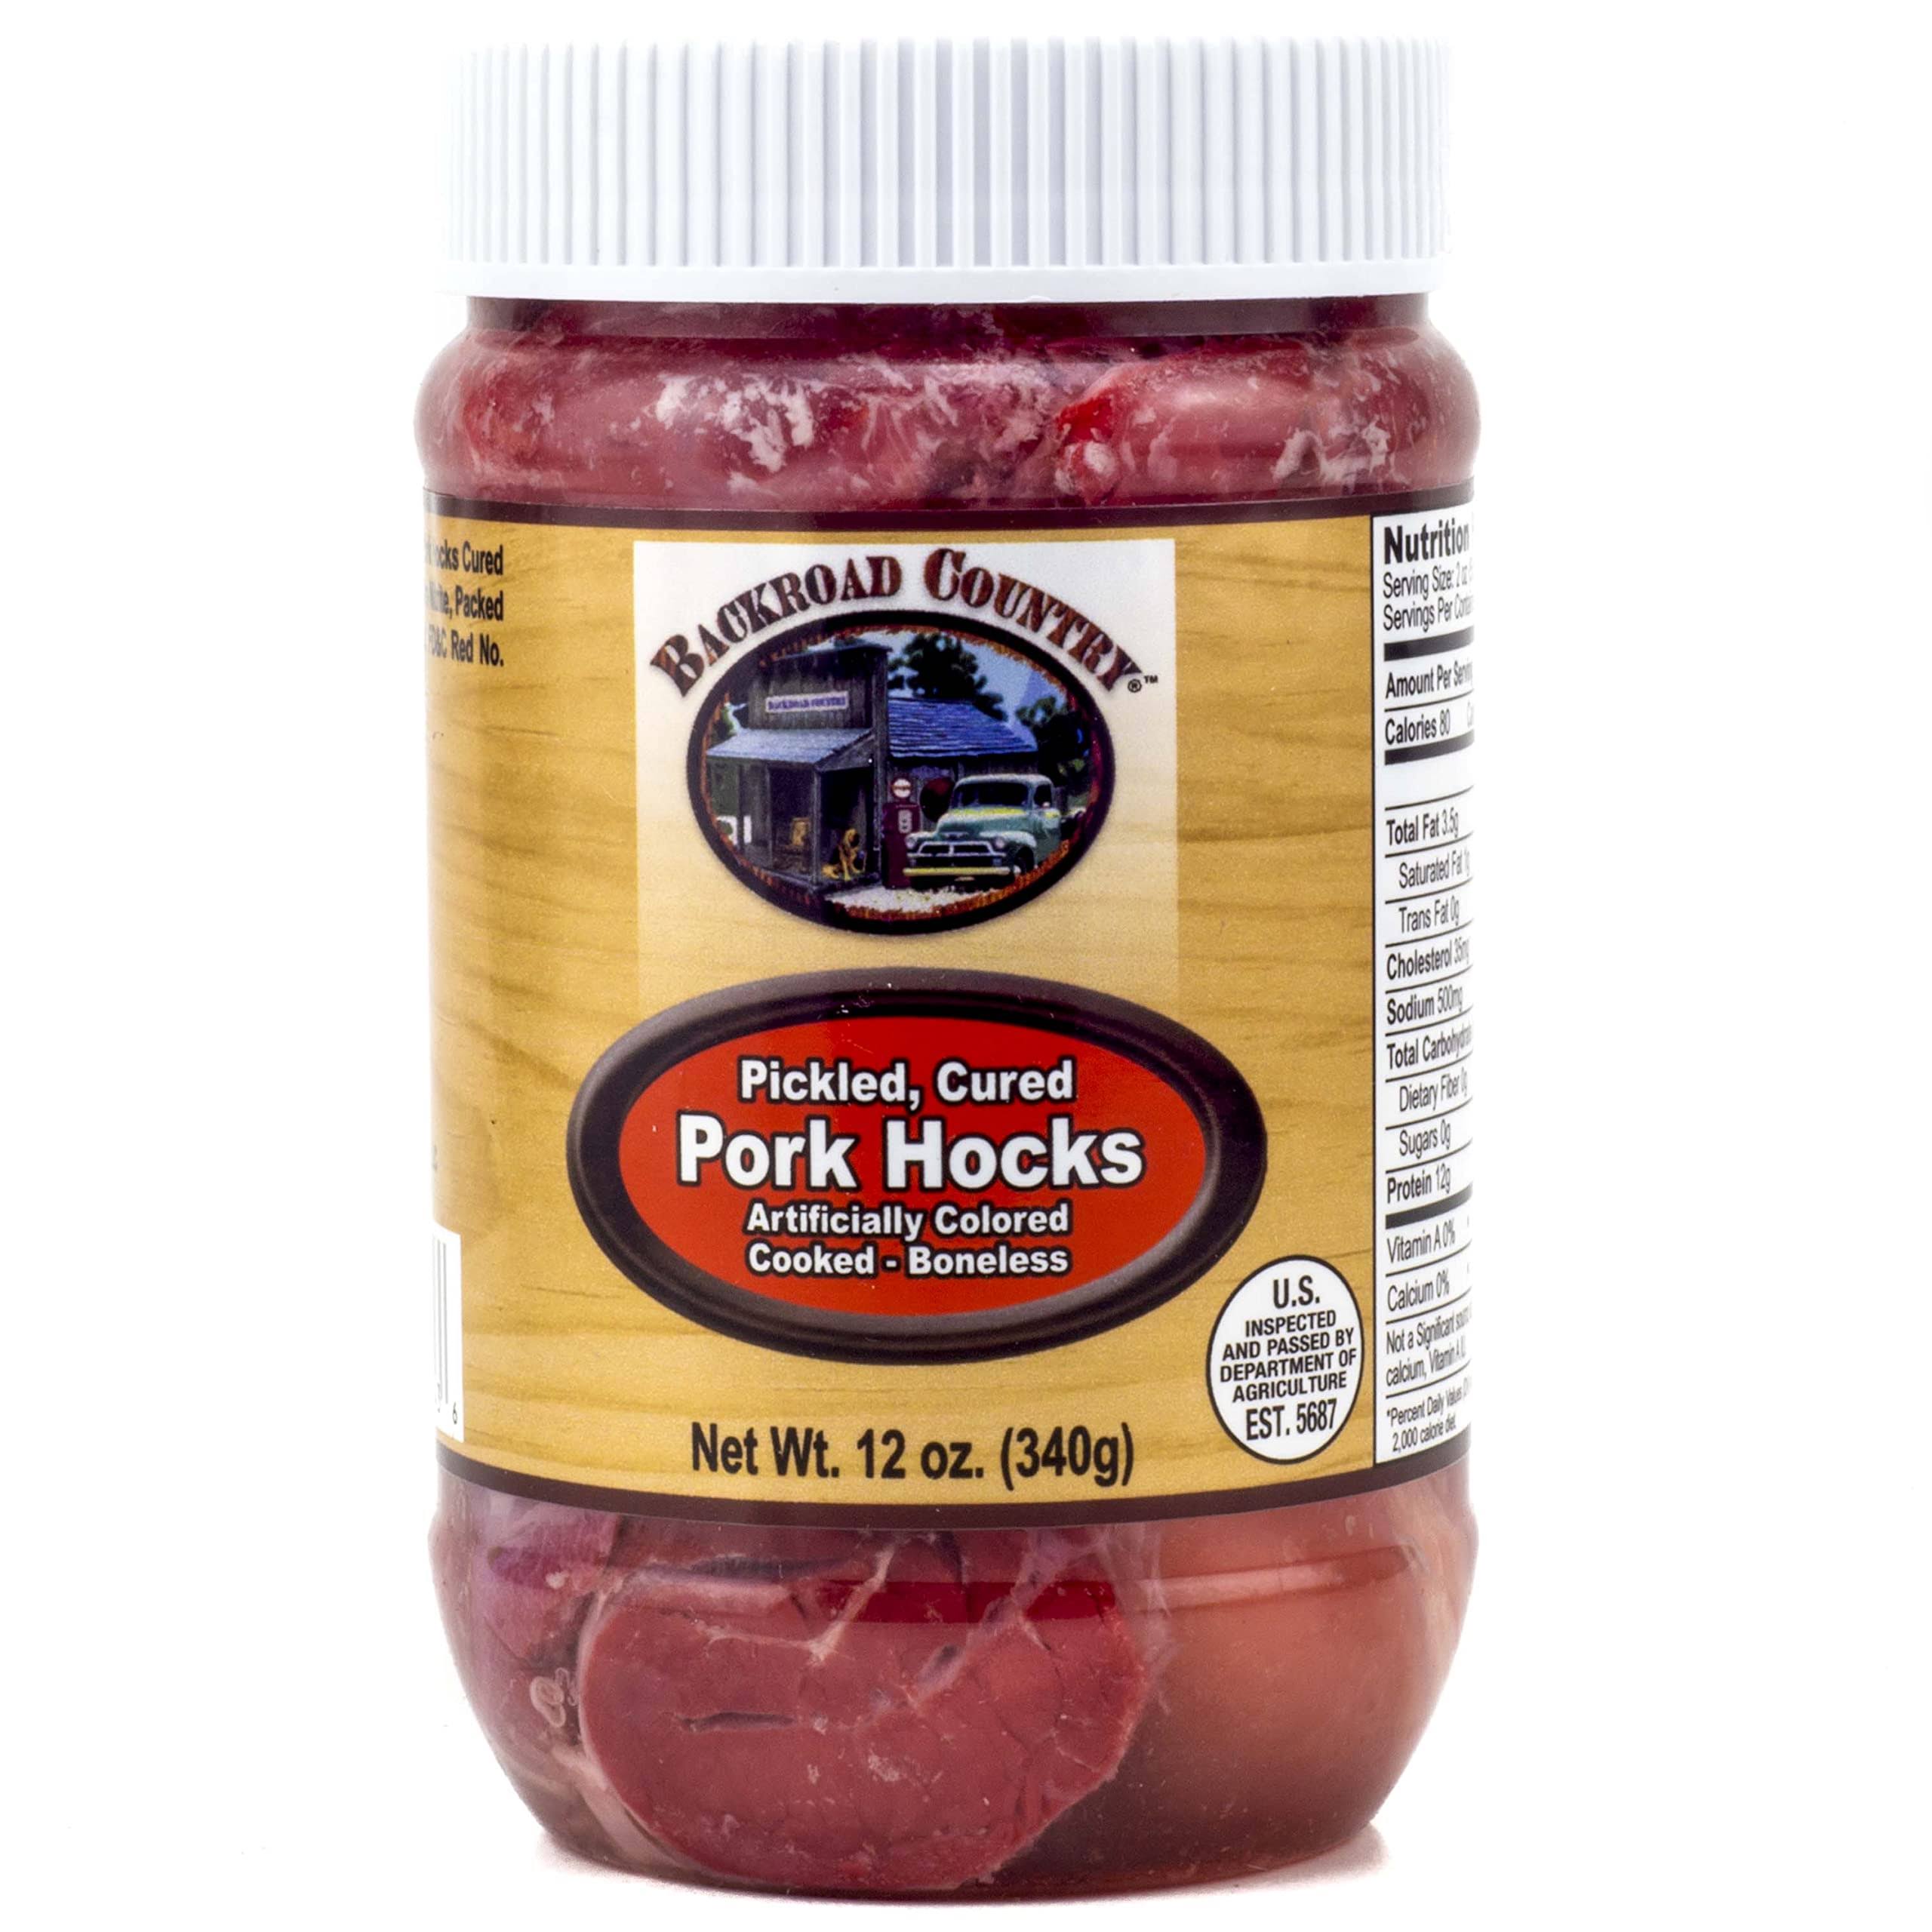 Backroad Country Pork Hocks, Pickled, Cured - 12 oz